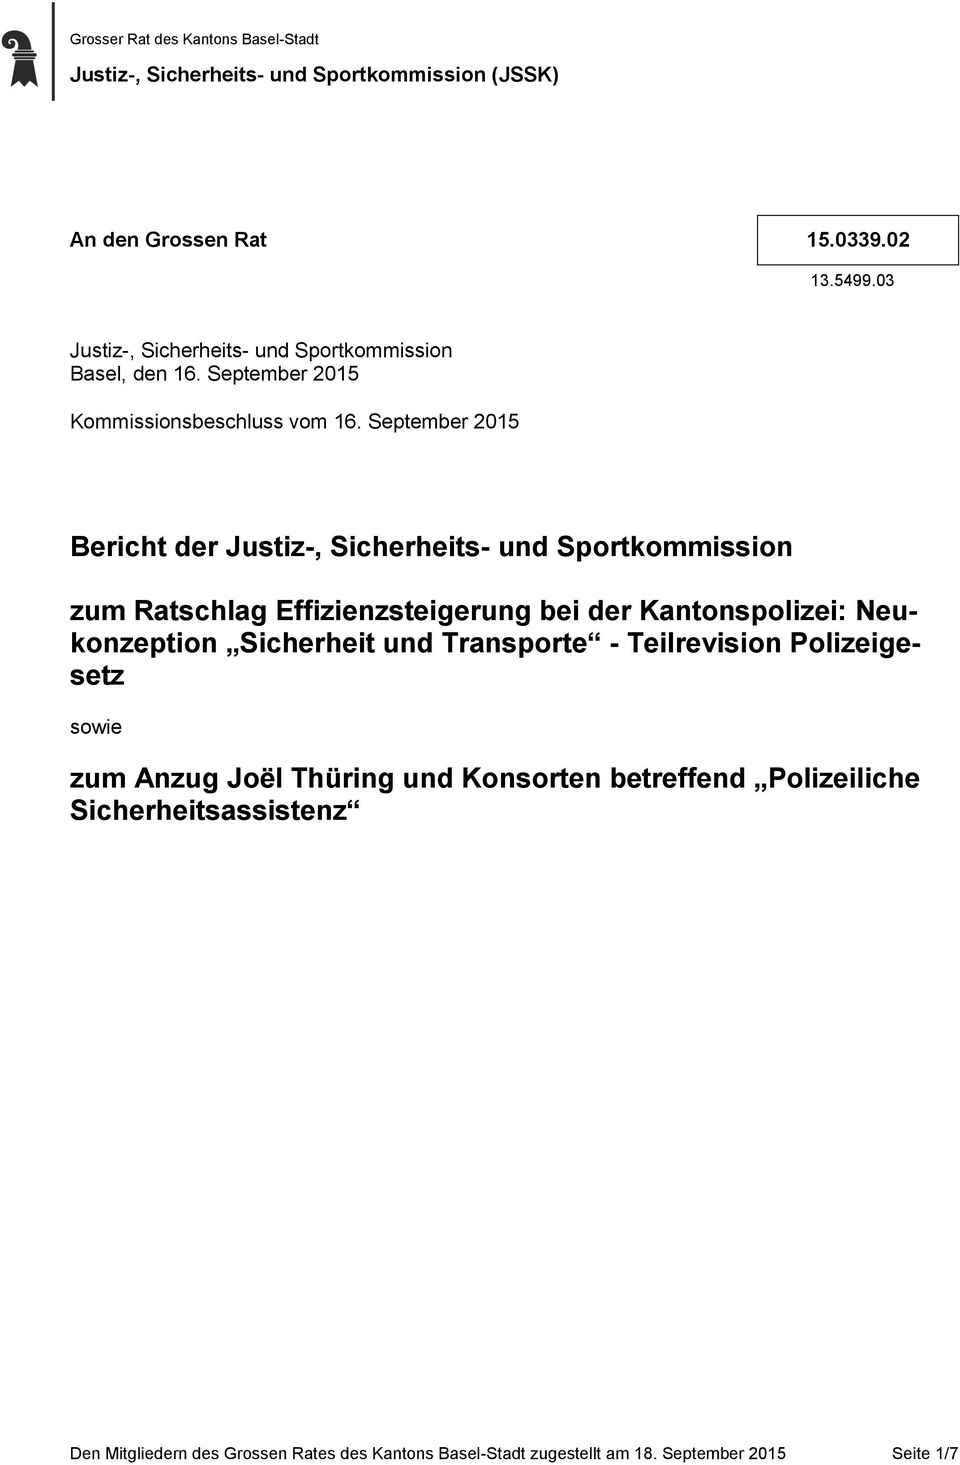 September 2015 Bericht der Justiz-, Sicherheits- und Sportkommission zum Ratschlag Effizienzsteigerung bei der Kantonspolizei: Neukonzeption Sicherheit